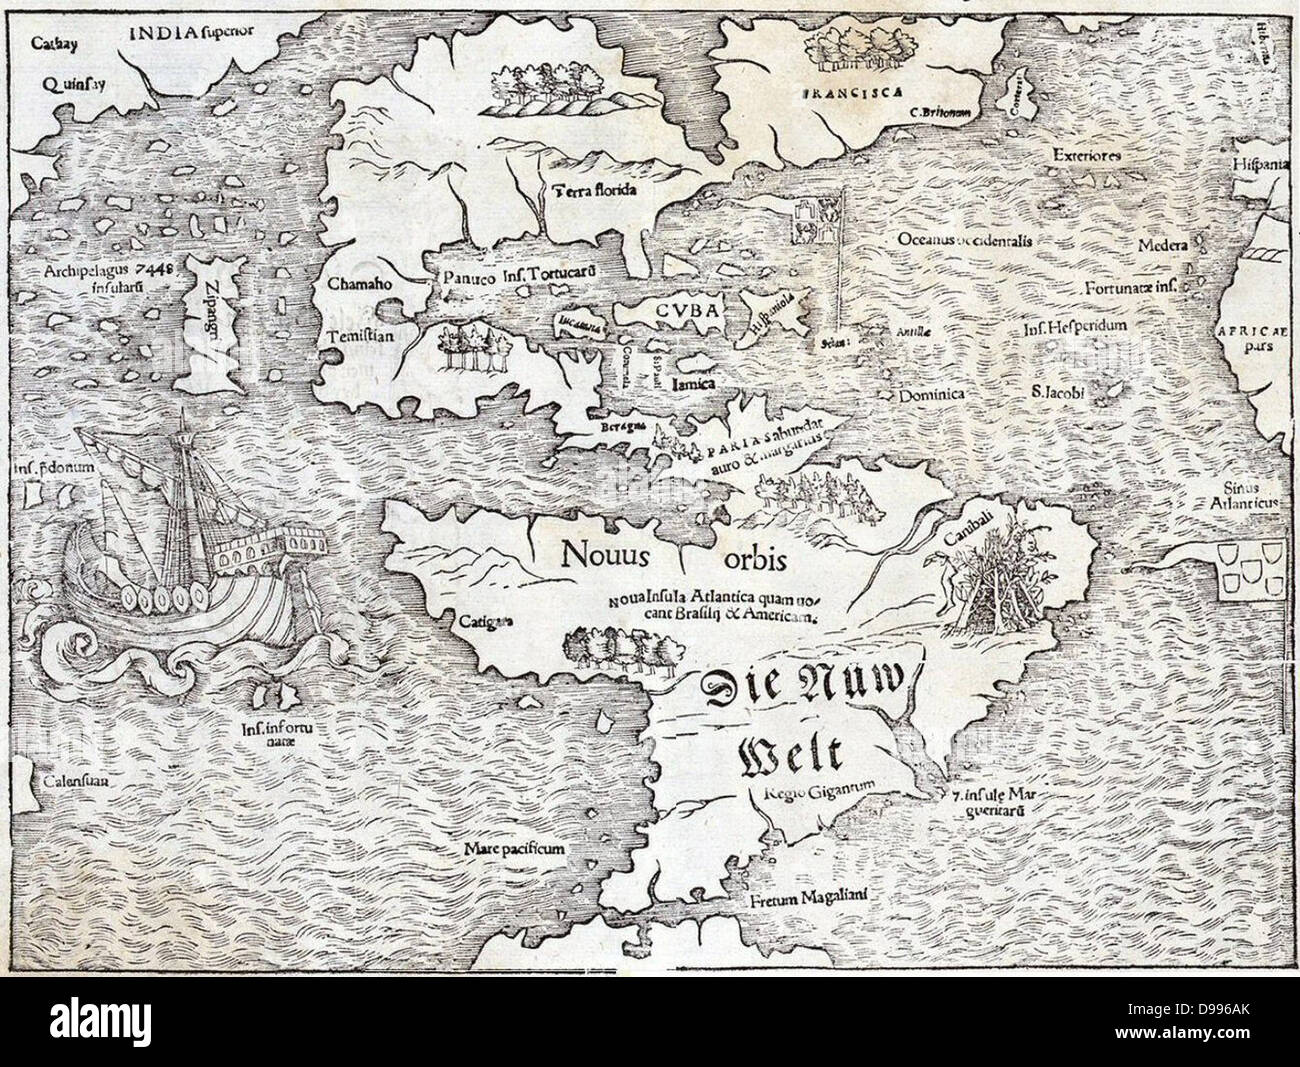 Mappa del Mondo Nuovo di Sebastian Munster, 1540, mostrando il nome 'Atlantis Island' Foto Stock